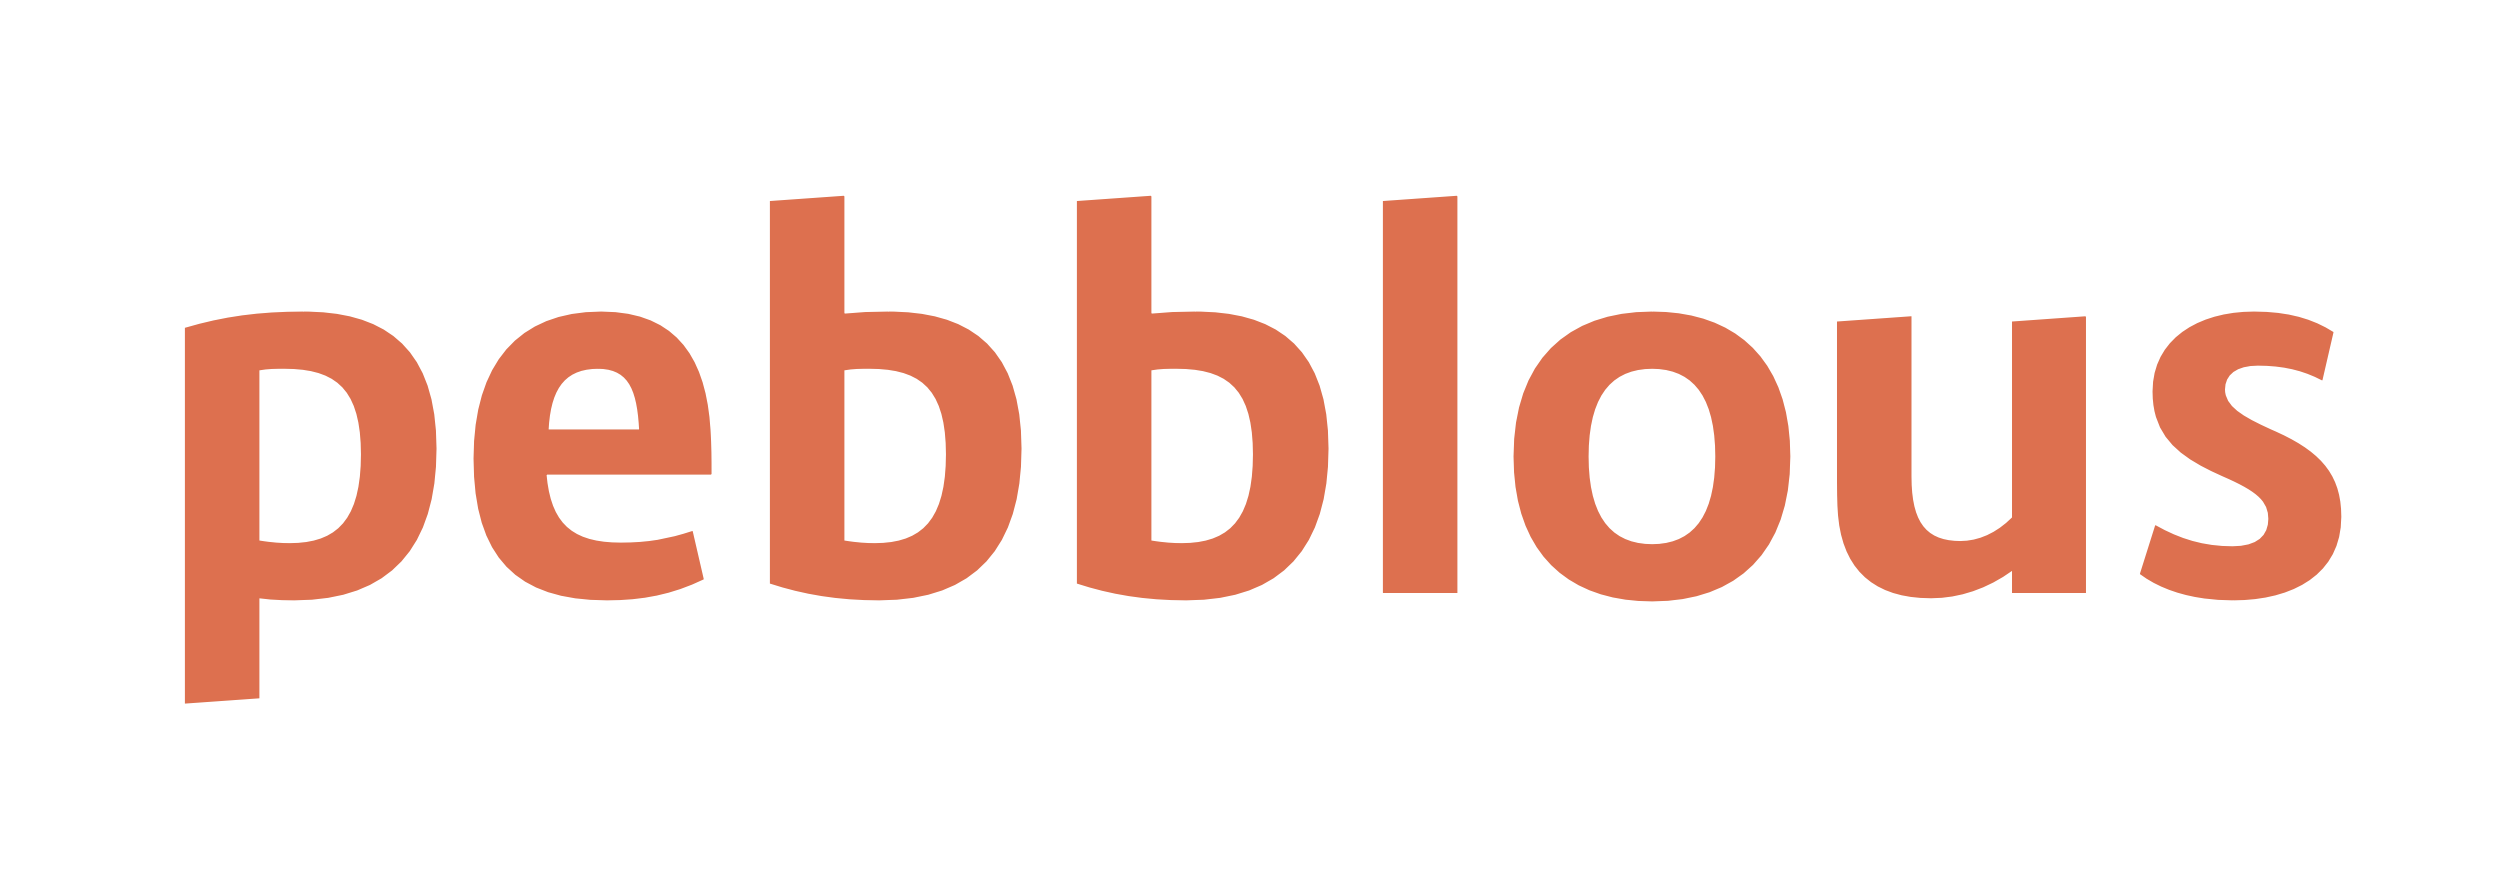 페블러스/ Pebblous Logo